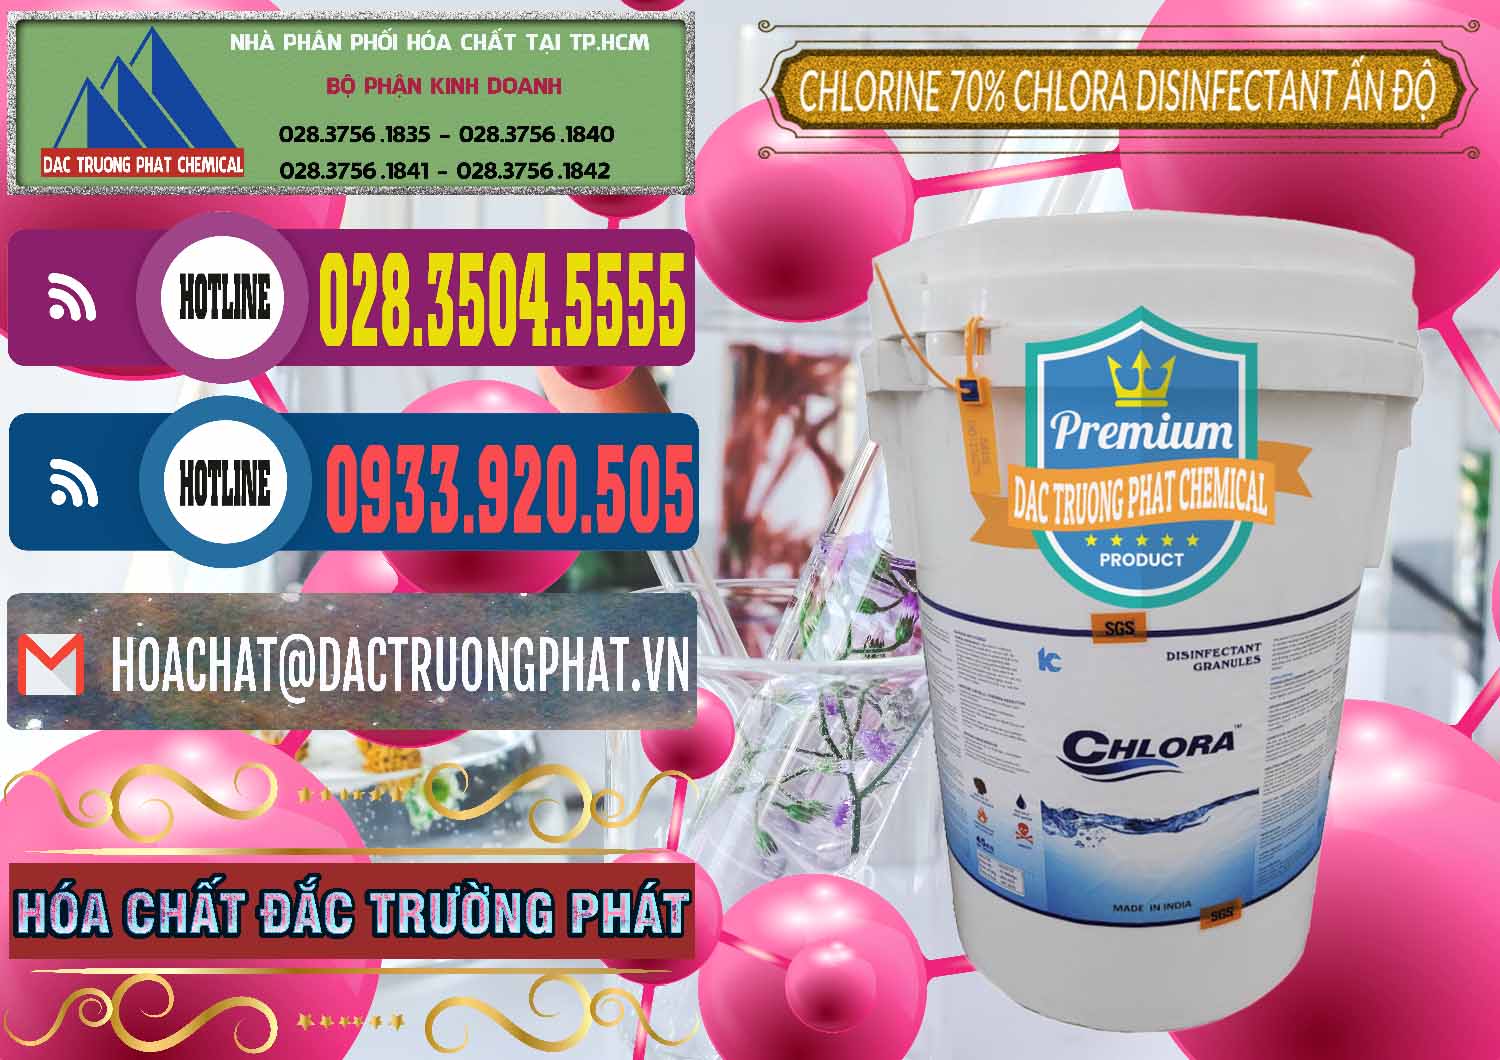 Nơi chuyên kinh doanh ( bán ) Chlorine – Clorin 70% Chlora Disinfectant Ấn Độ India - 0213 - Công ty cung cấp _ phân phối hóa chất tại TP.HCM - muabanhoachat.com.vn